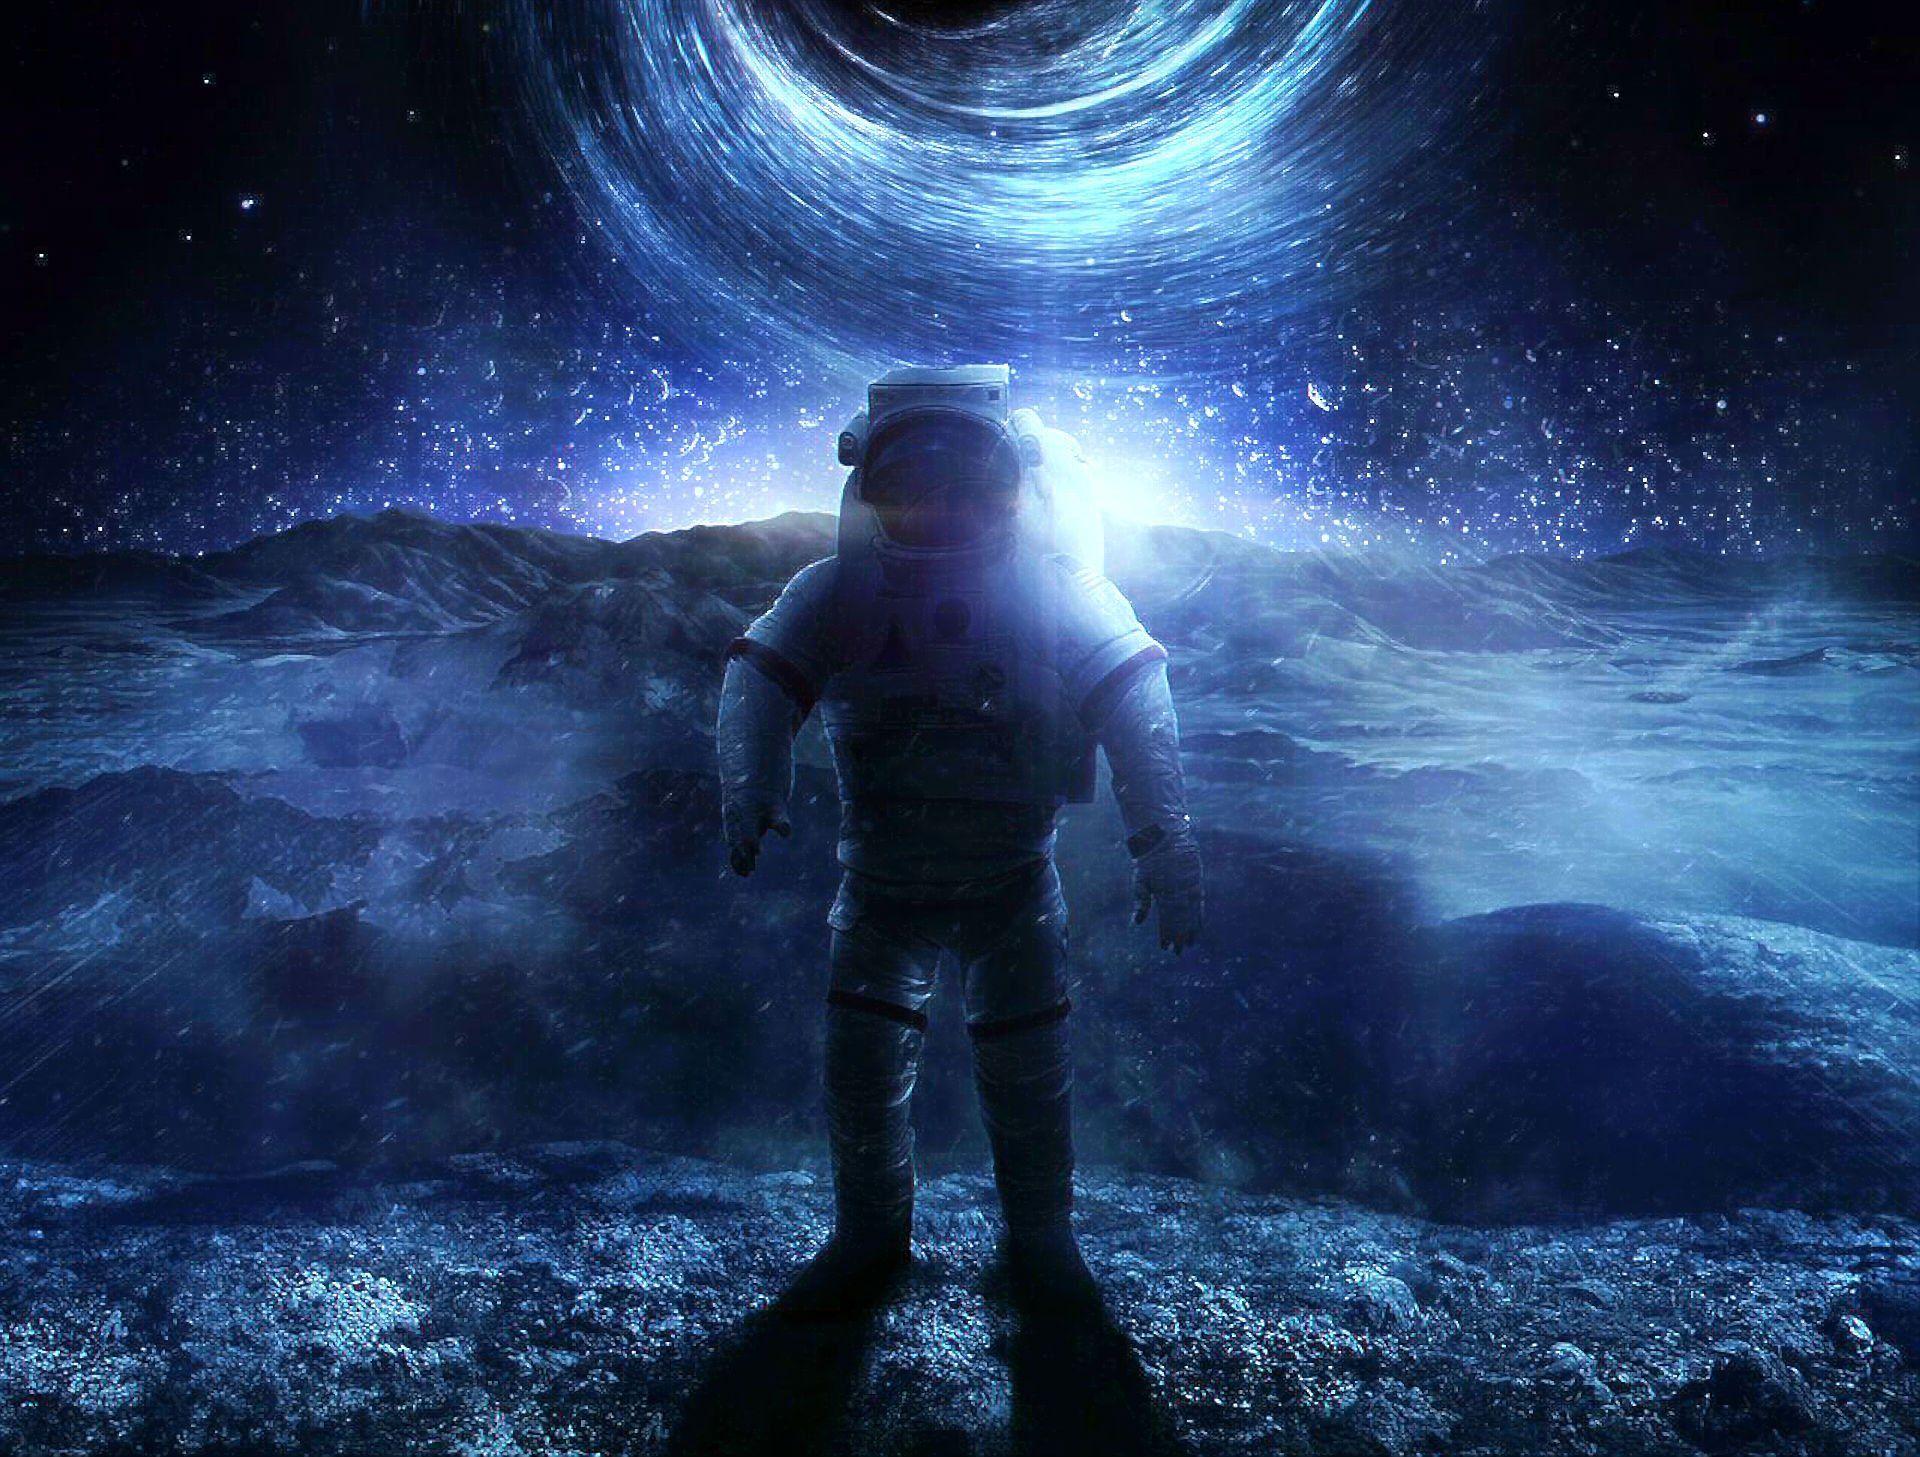 INTERSTELLAR Adventure Mystery Sci Fi Futuristic Film Astronaut